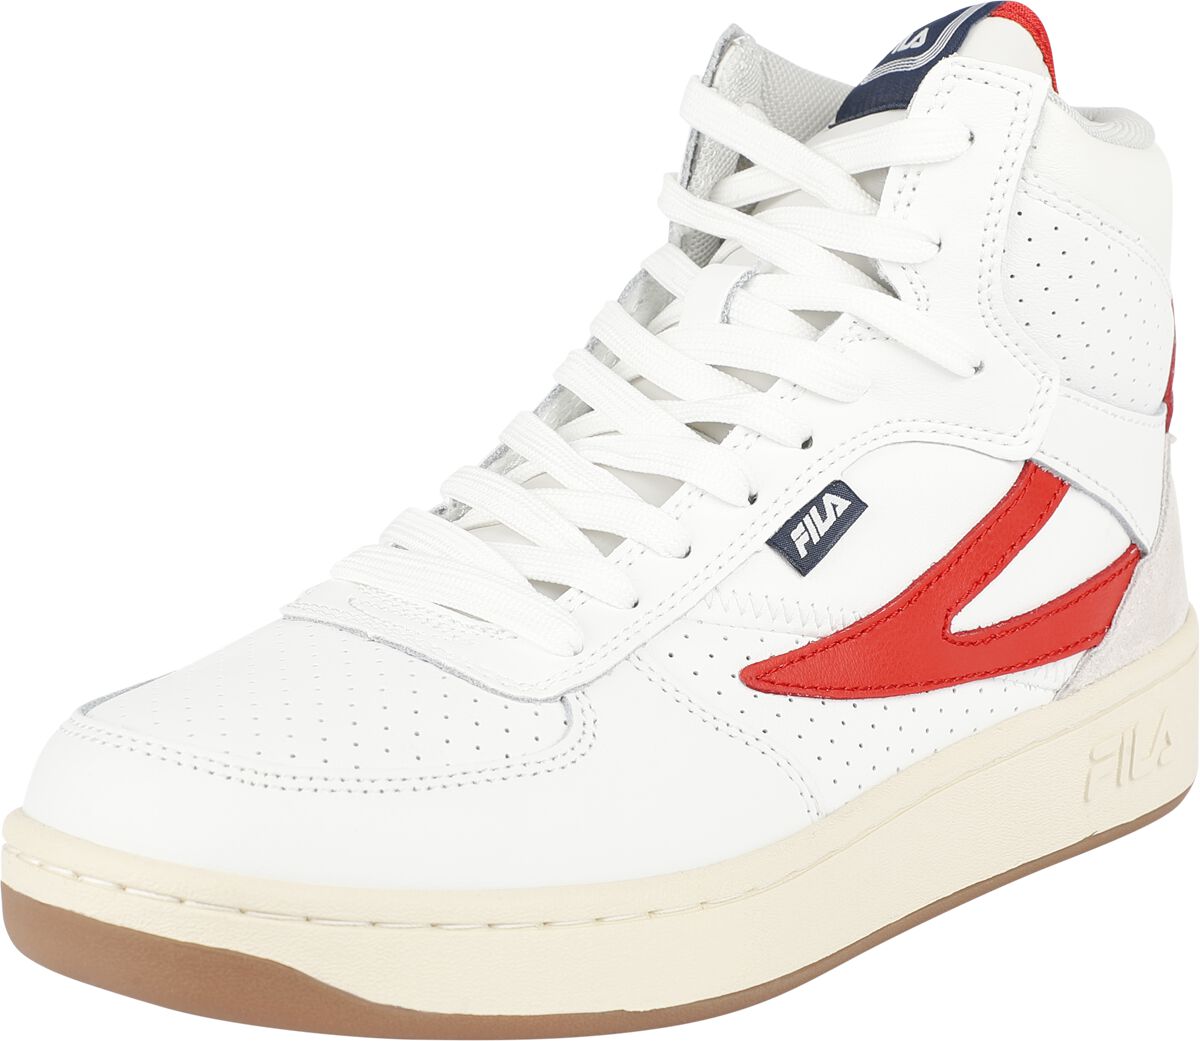 Fila FILA SEVARO mid wmn Sneaker high weiß rot in EU39